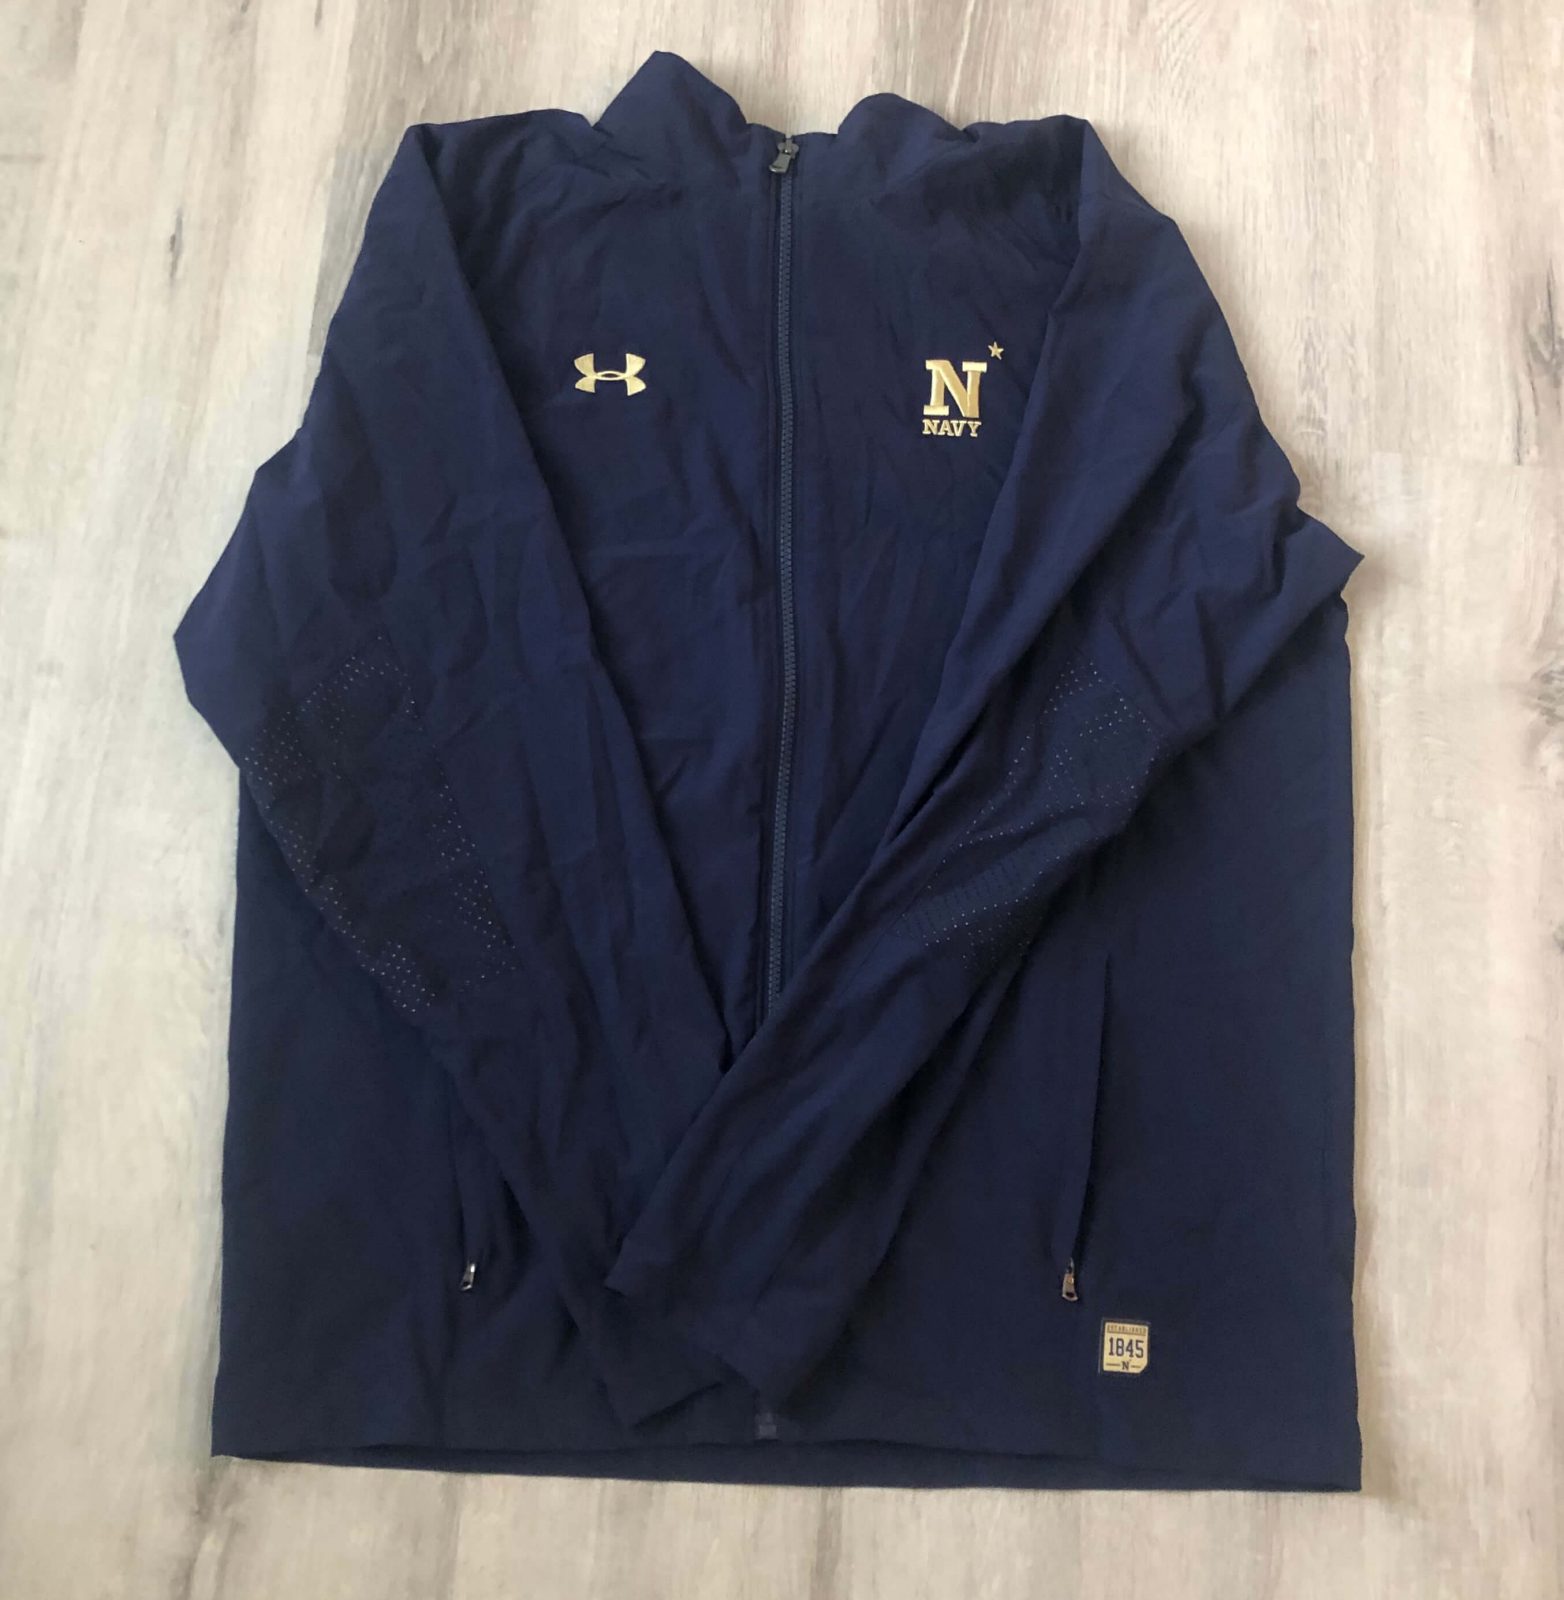 US Naval Academy Jacket : NARP Clothing